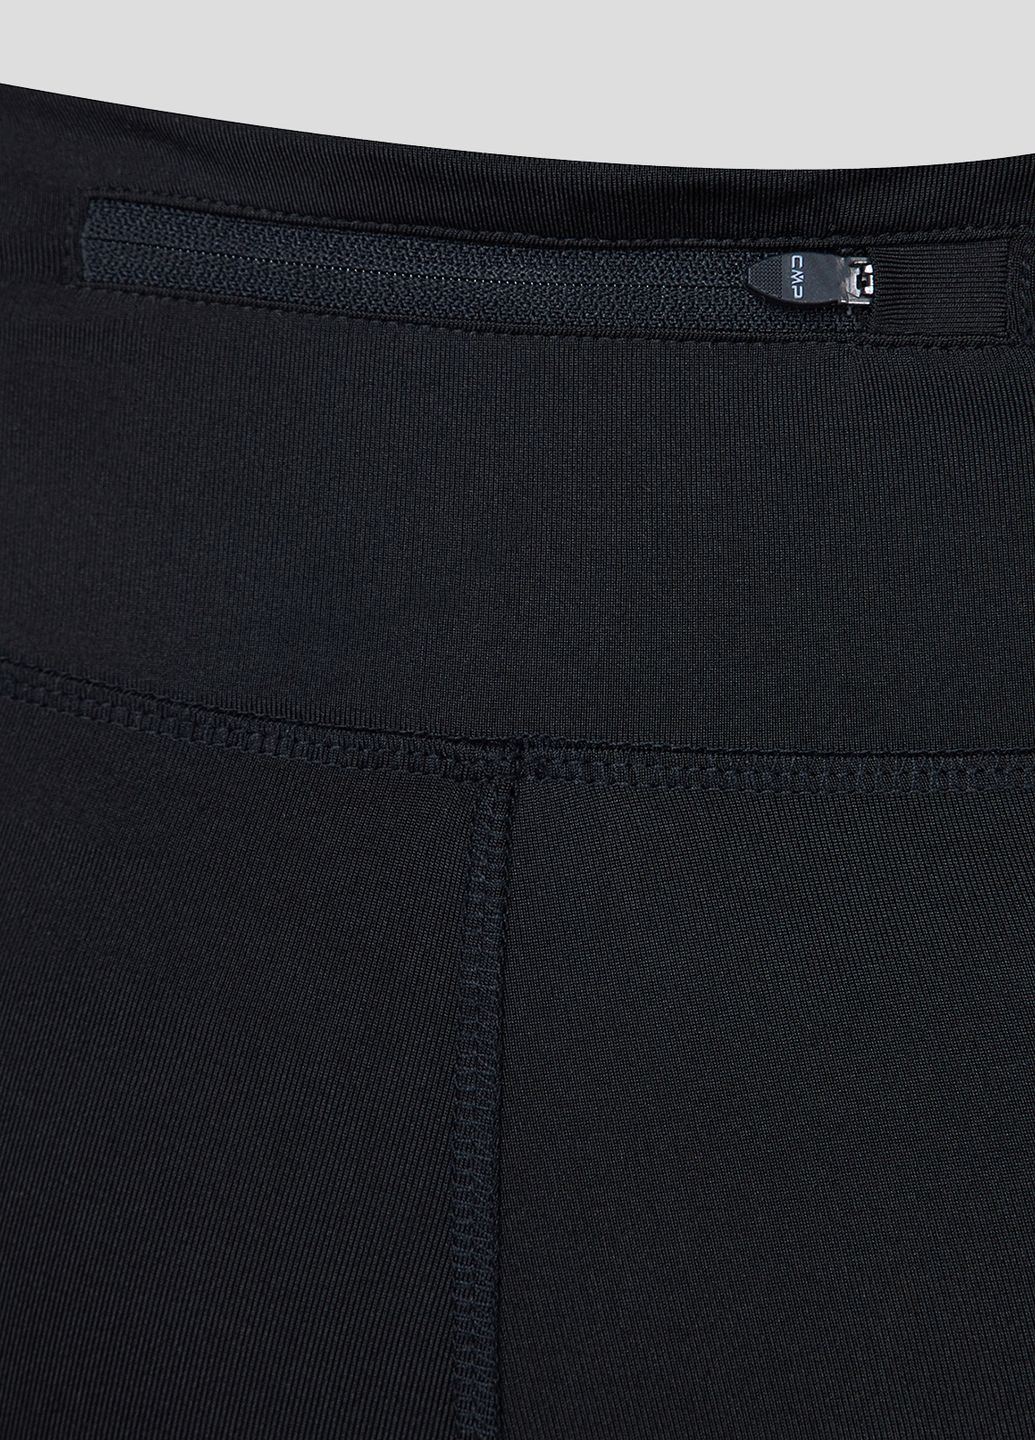 Черные спортивные демисезонные брюки CMP